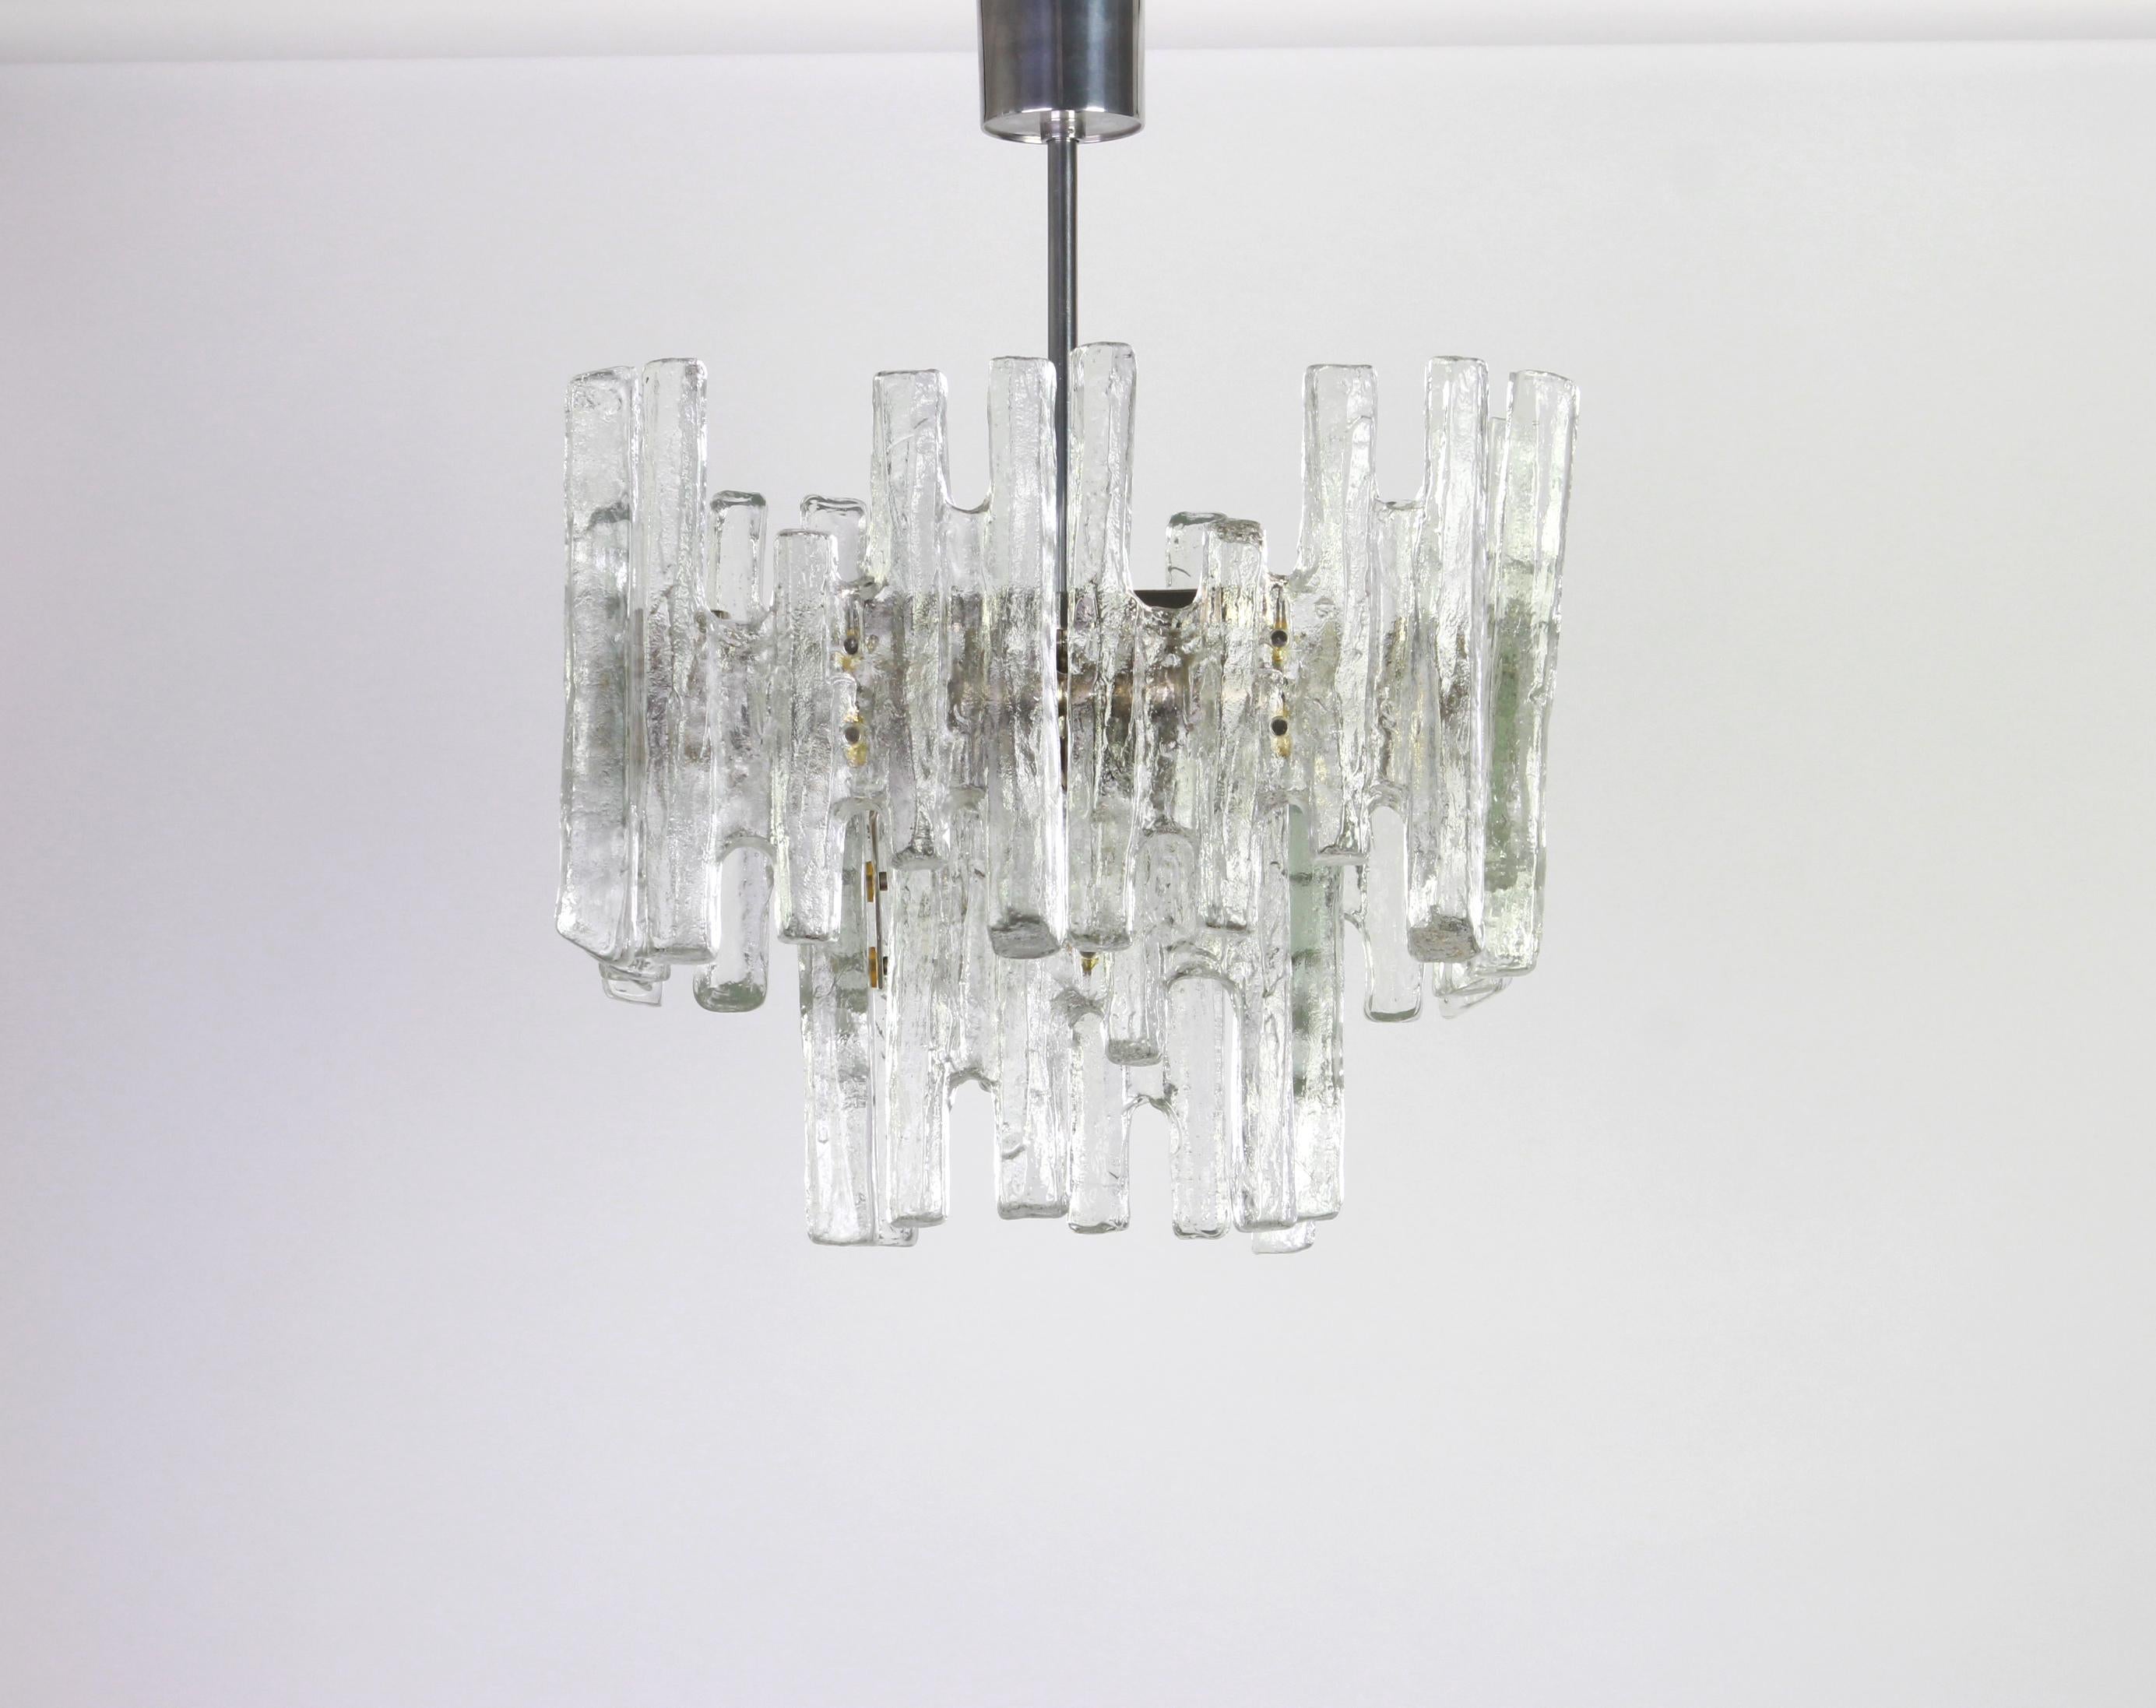 Prächtiger Kronleuchter aus Murano-Glas von Kalmar, 1960er Jahre
Zwei Etagen Struktur Versammlung 12 strukturierte Gläser, schön brechen das Licht sehr schwere Qualität.

Hochwertig und in sehr gutem Zustand. Gereinigt, gut verkabelt und